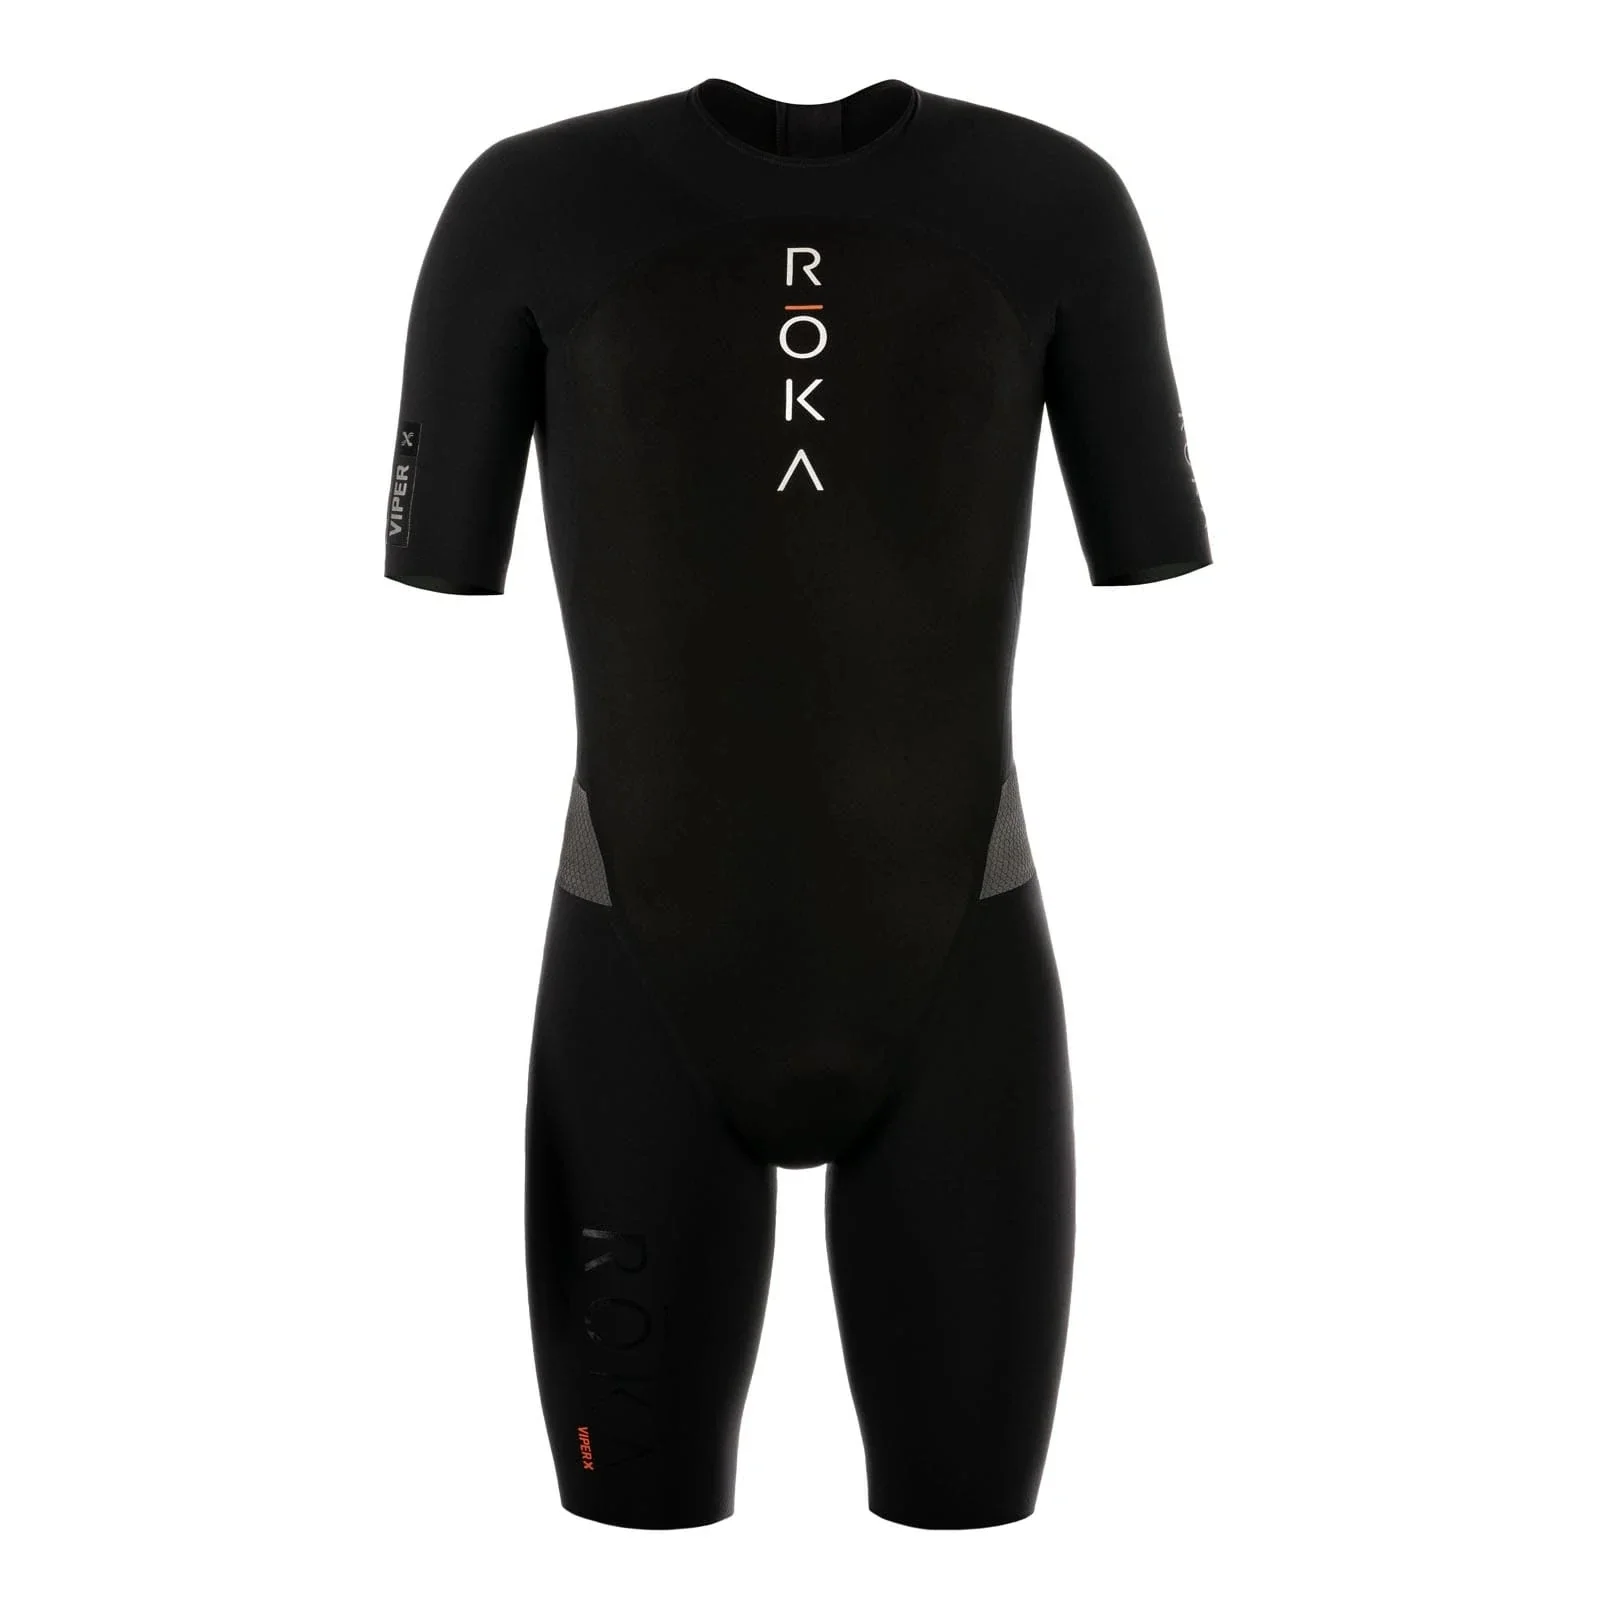 

Костюм для триатлона Roka мужской, Трикотажный костюм с короткими рукавами для велоспорта, одежда для бега